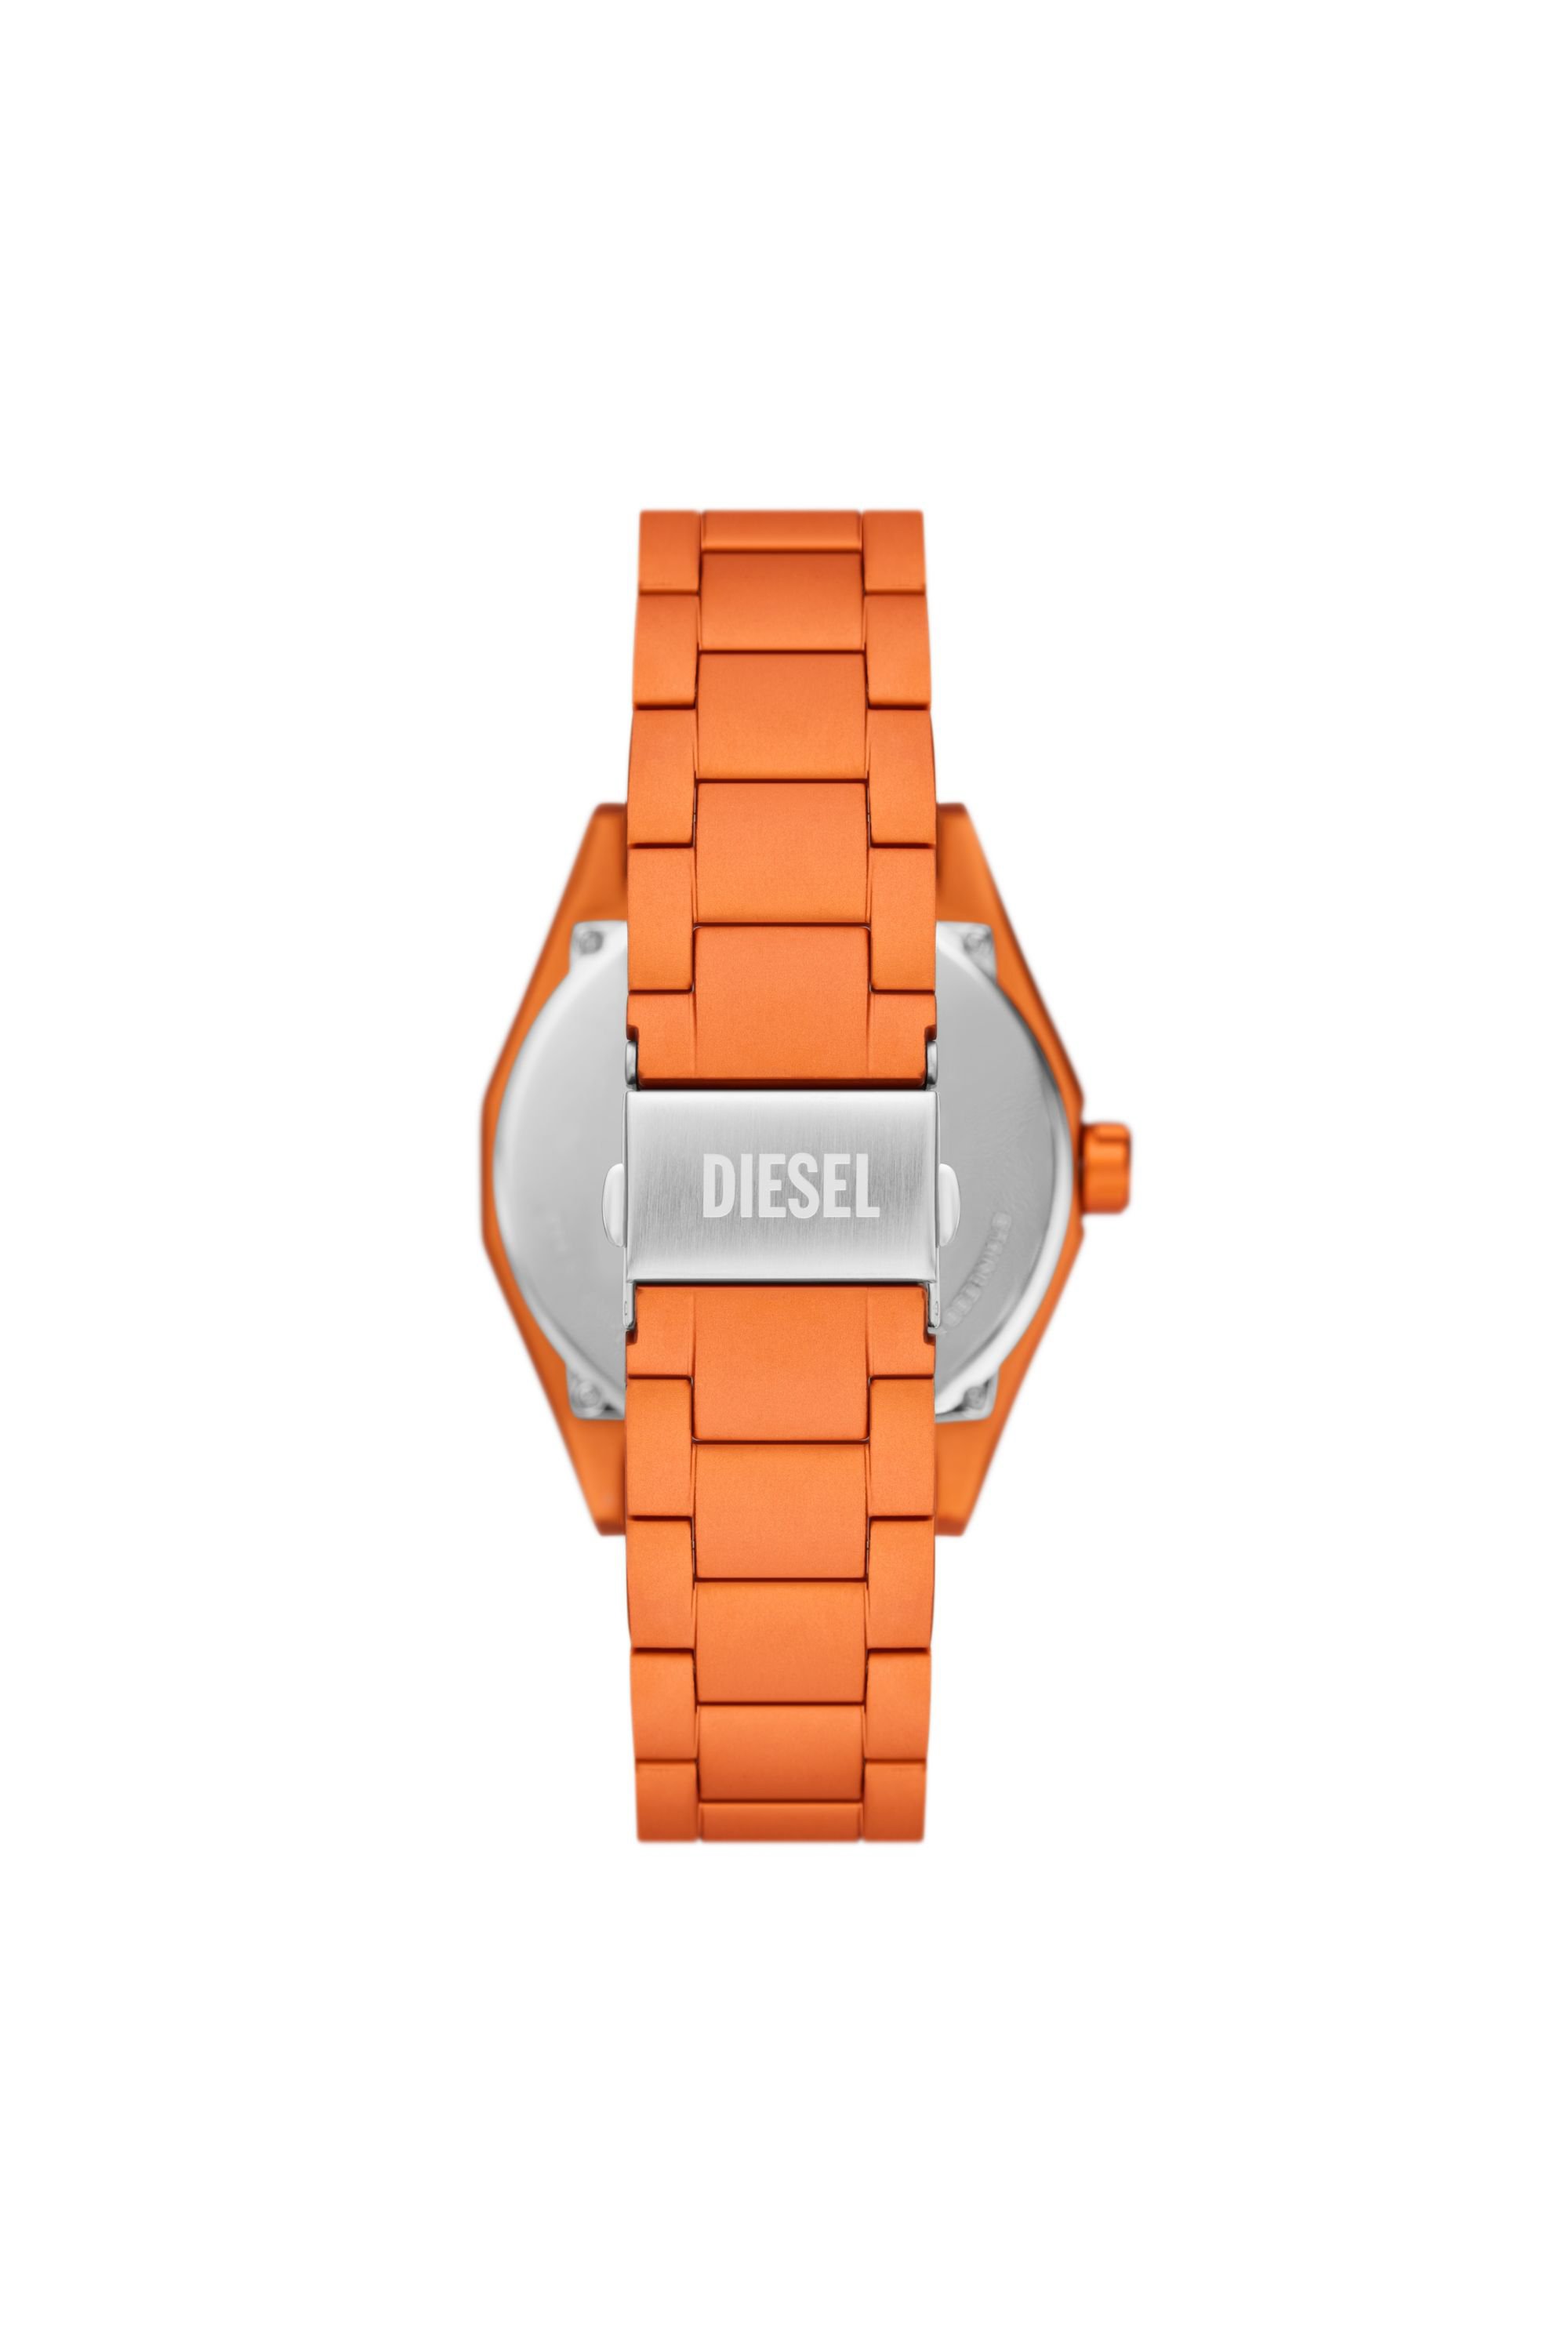 Diesel - DZ2209, Hombre Reloj Scraper de aluminio naranja con movimiento de tres agujas in Naranja - Image 3